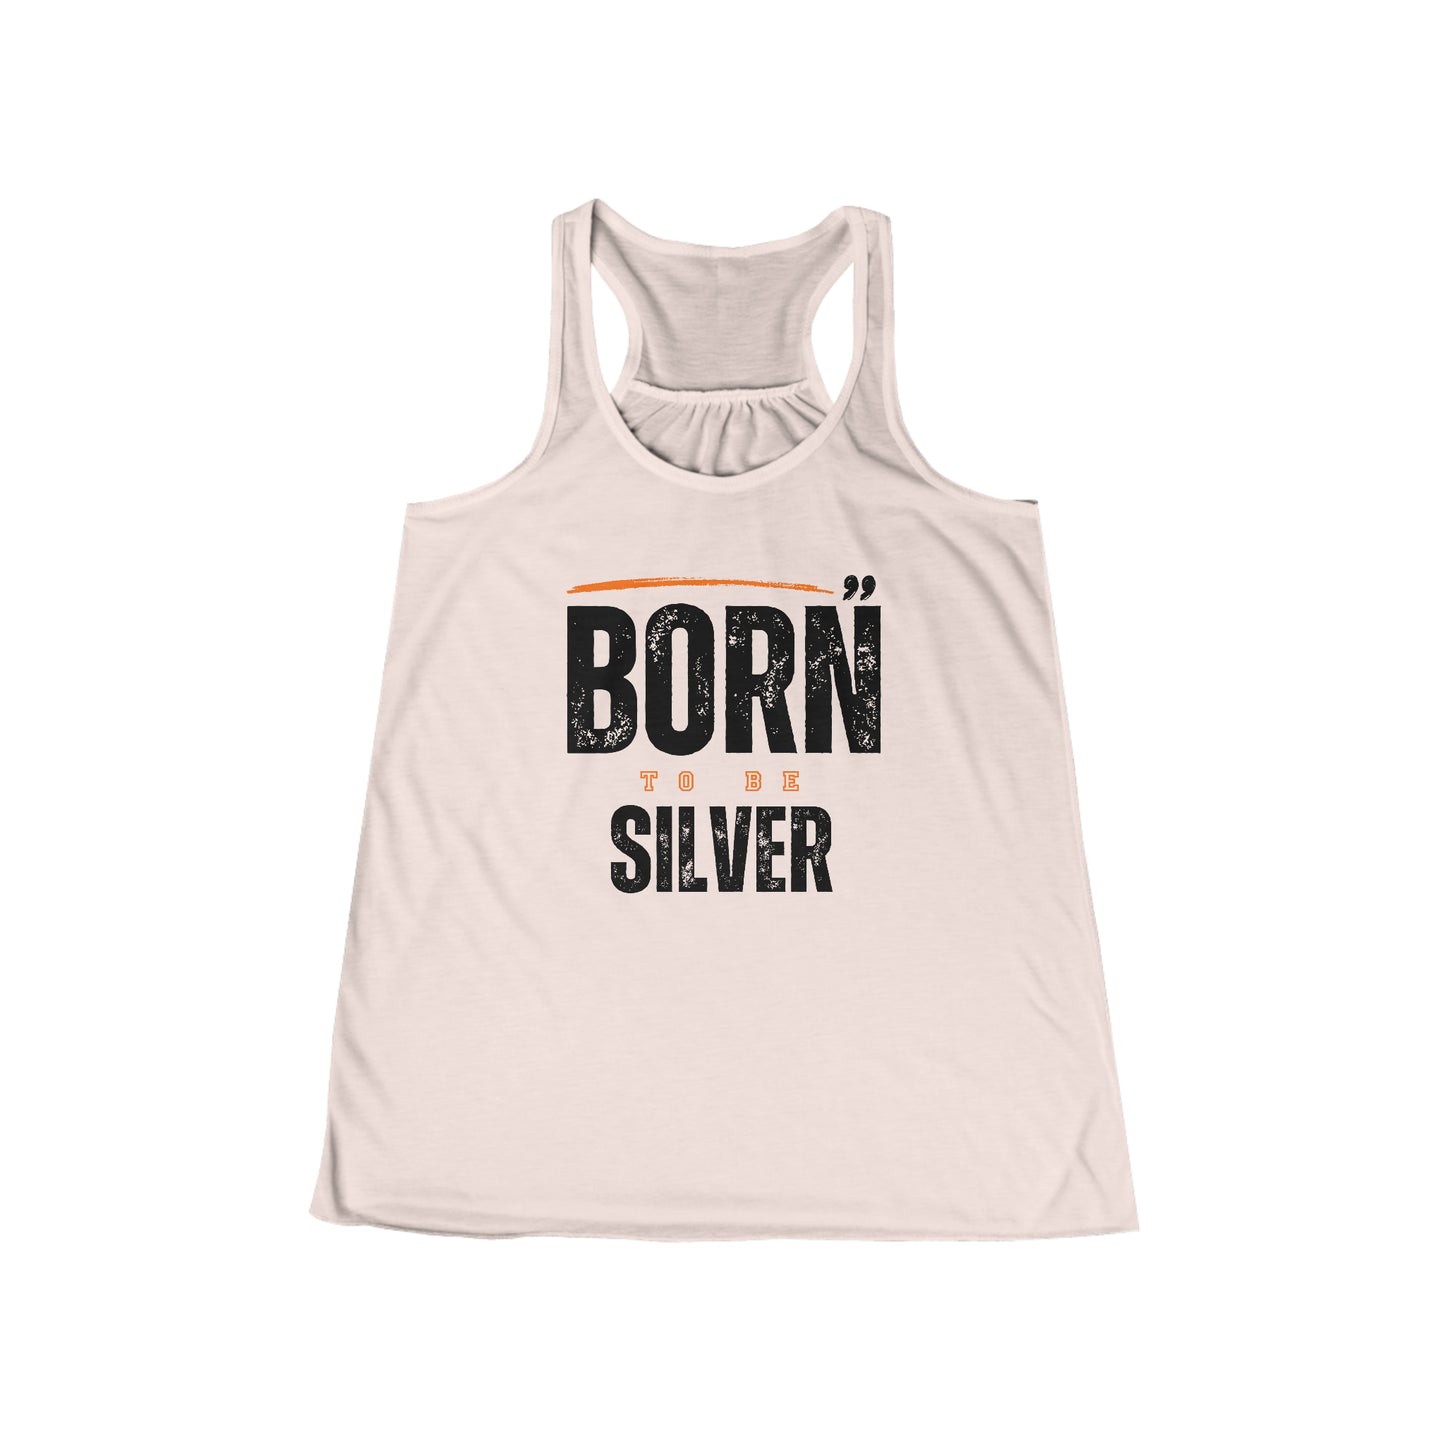 Born Silver. Women's Flowy Racerback Tank